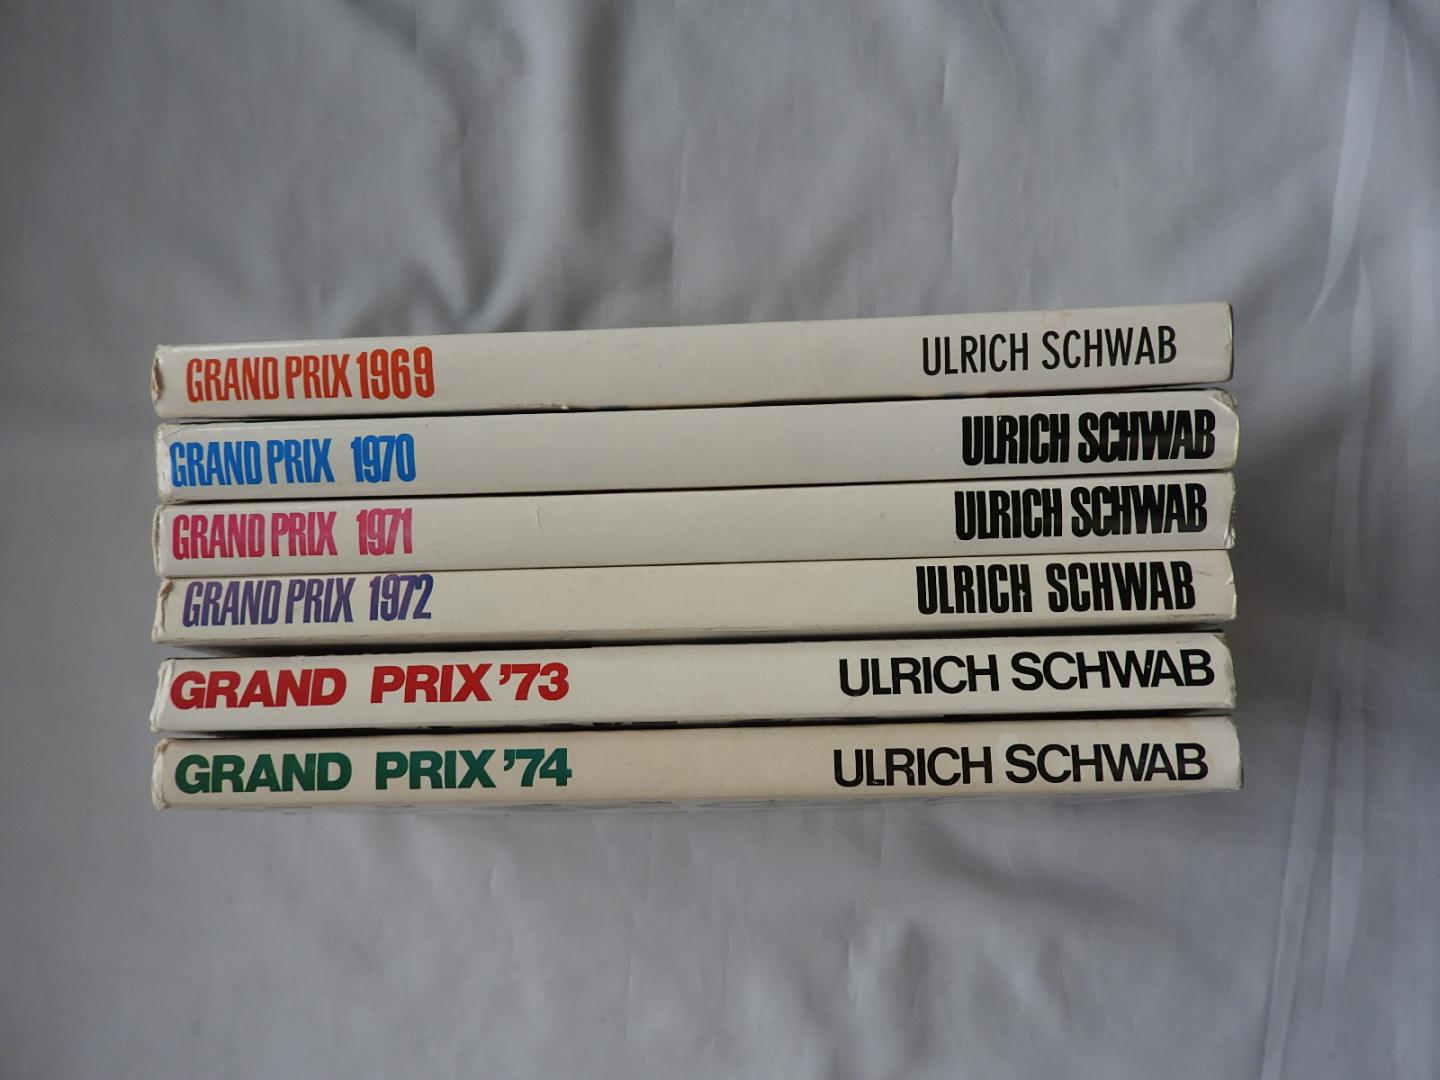 Schwab Ulrich U. - Grand Prix   De Races om het Wereldkampioenschap    69, 70, 71, 72, 73, 74, 80, 81, 82, 83, 84. - 1969. 1970. 1971. 1972. 1973. 1974. 1980. 1981. 1982. 1983. 1984.